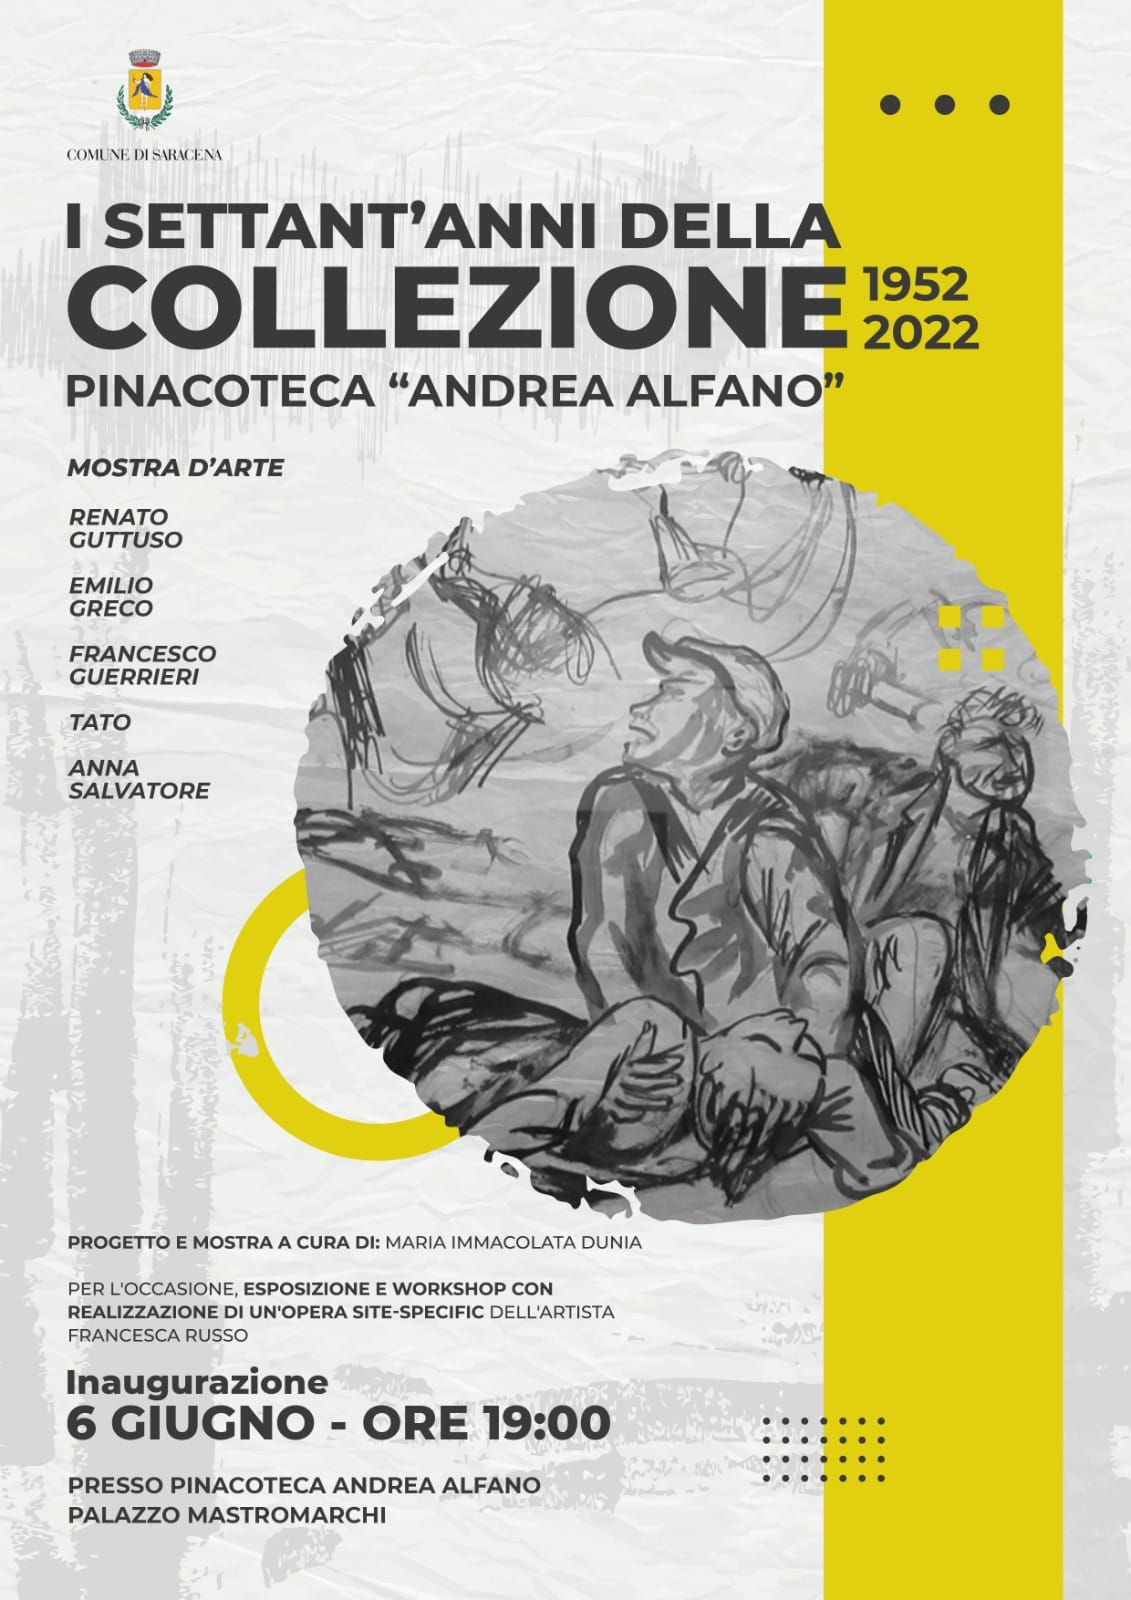 Settantesimo anniversario della collezione della nostra Pinacoteca